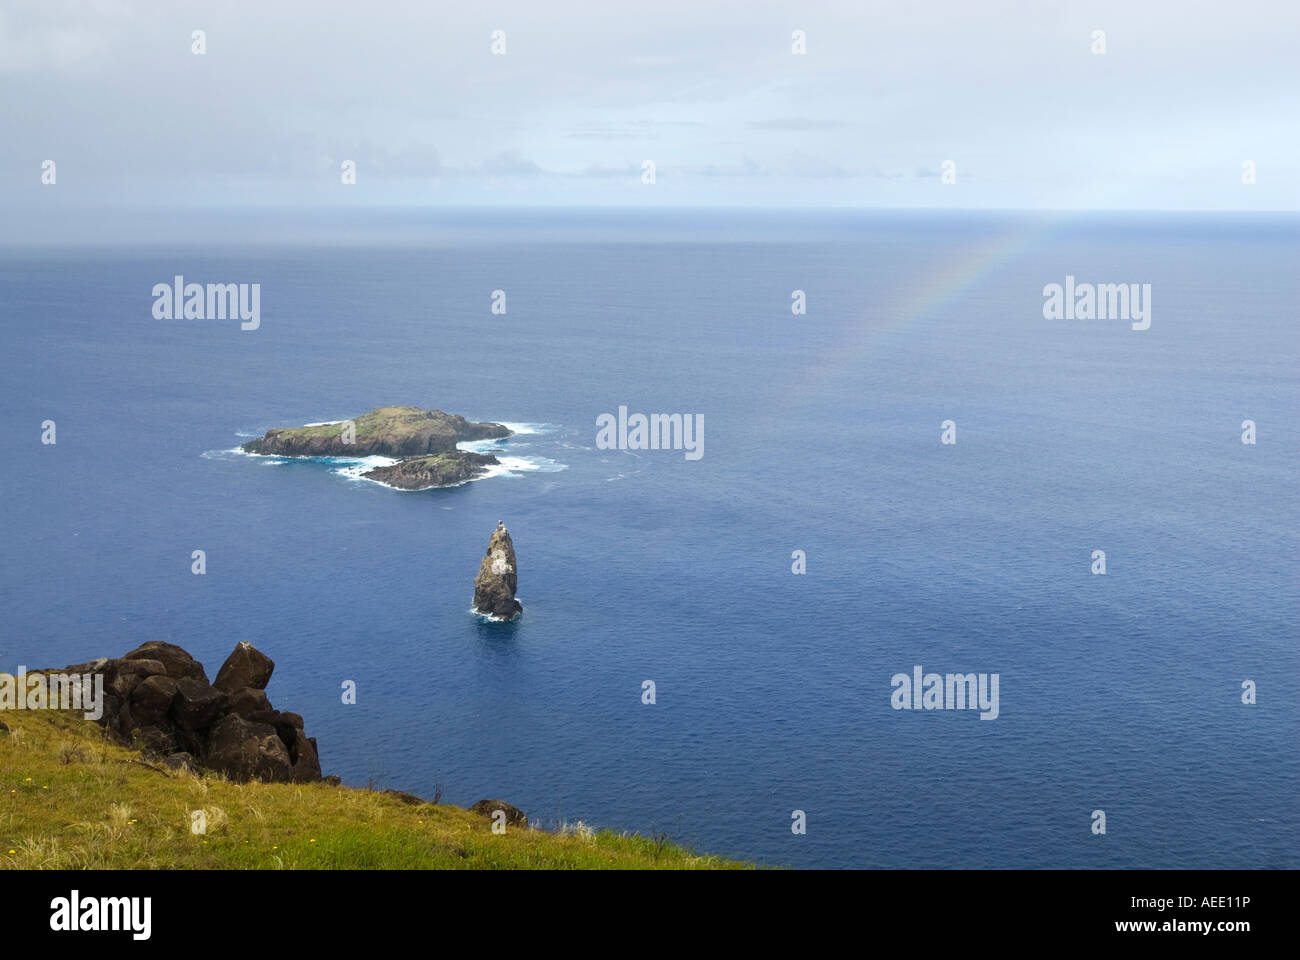 Gli isolotti di Motu Nui e Motu Iti, al largo della costa della isola di Pasqua nell'Oceano Pacifico. Foto Stock